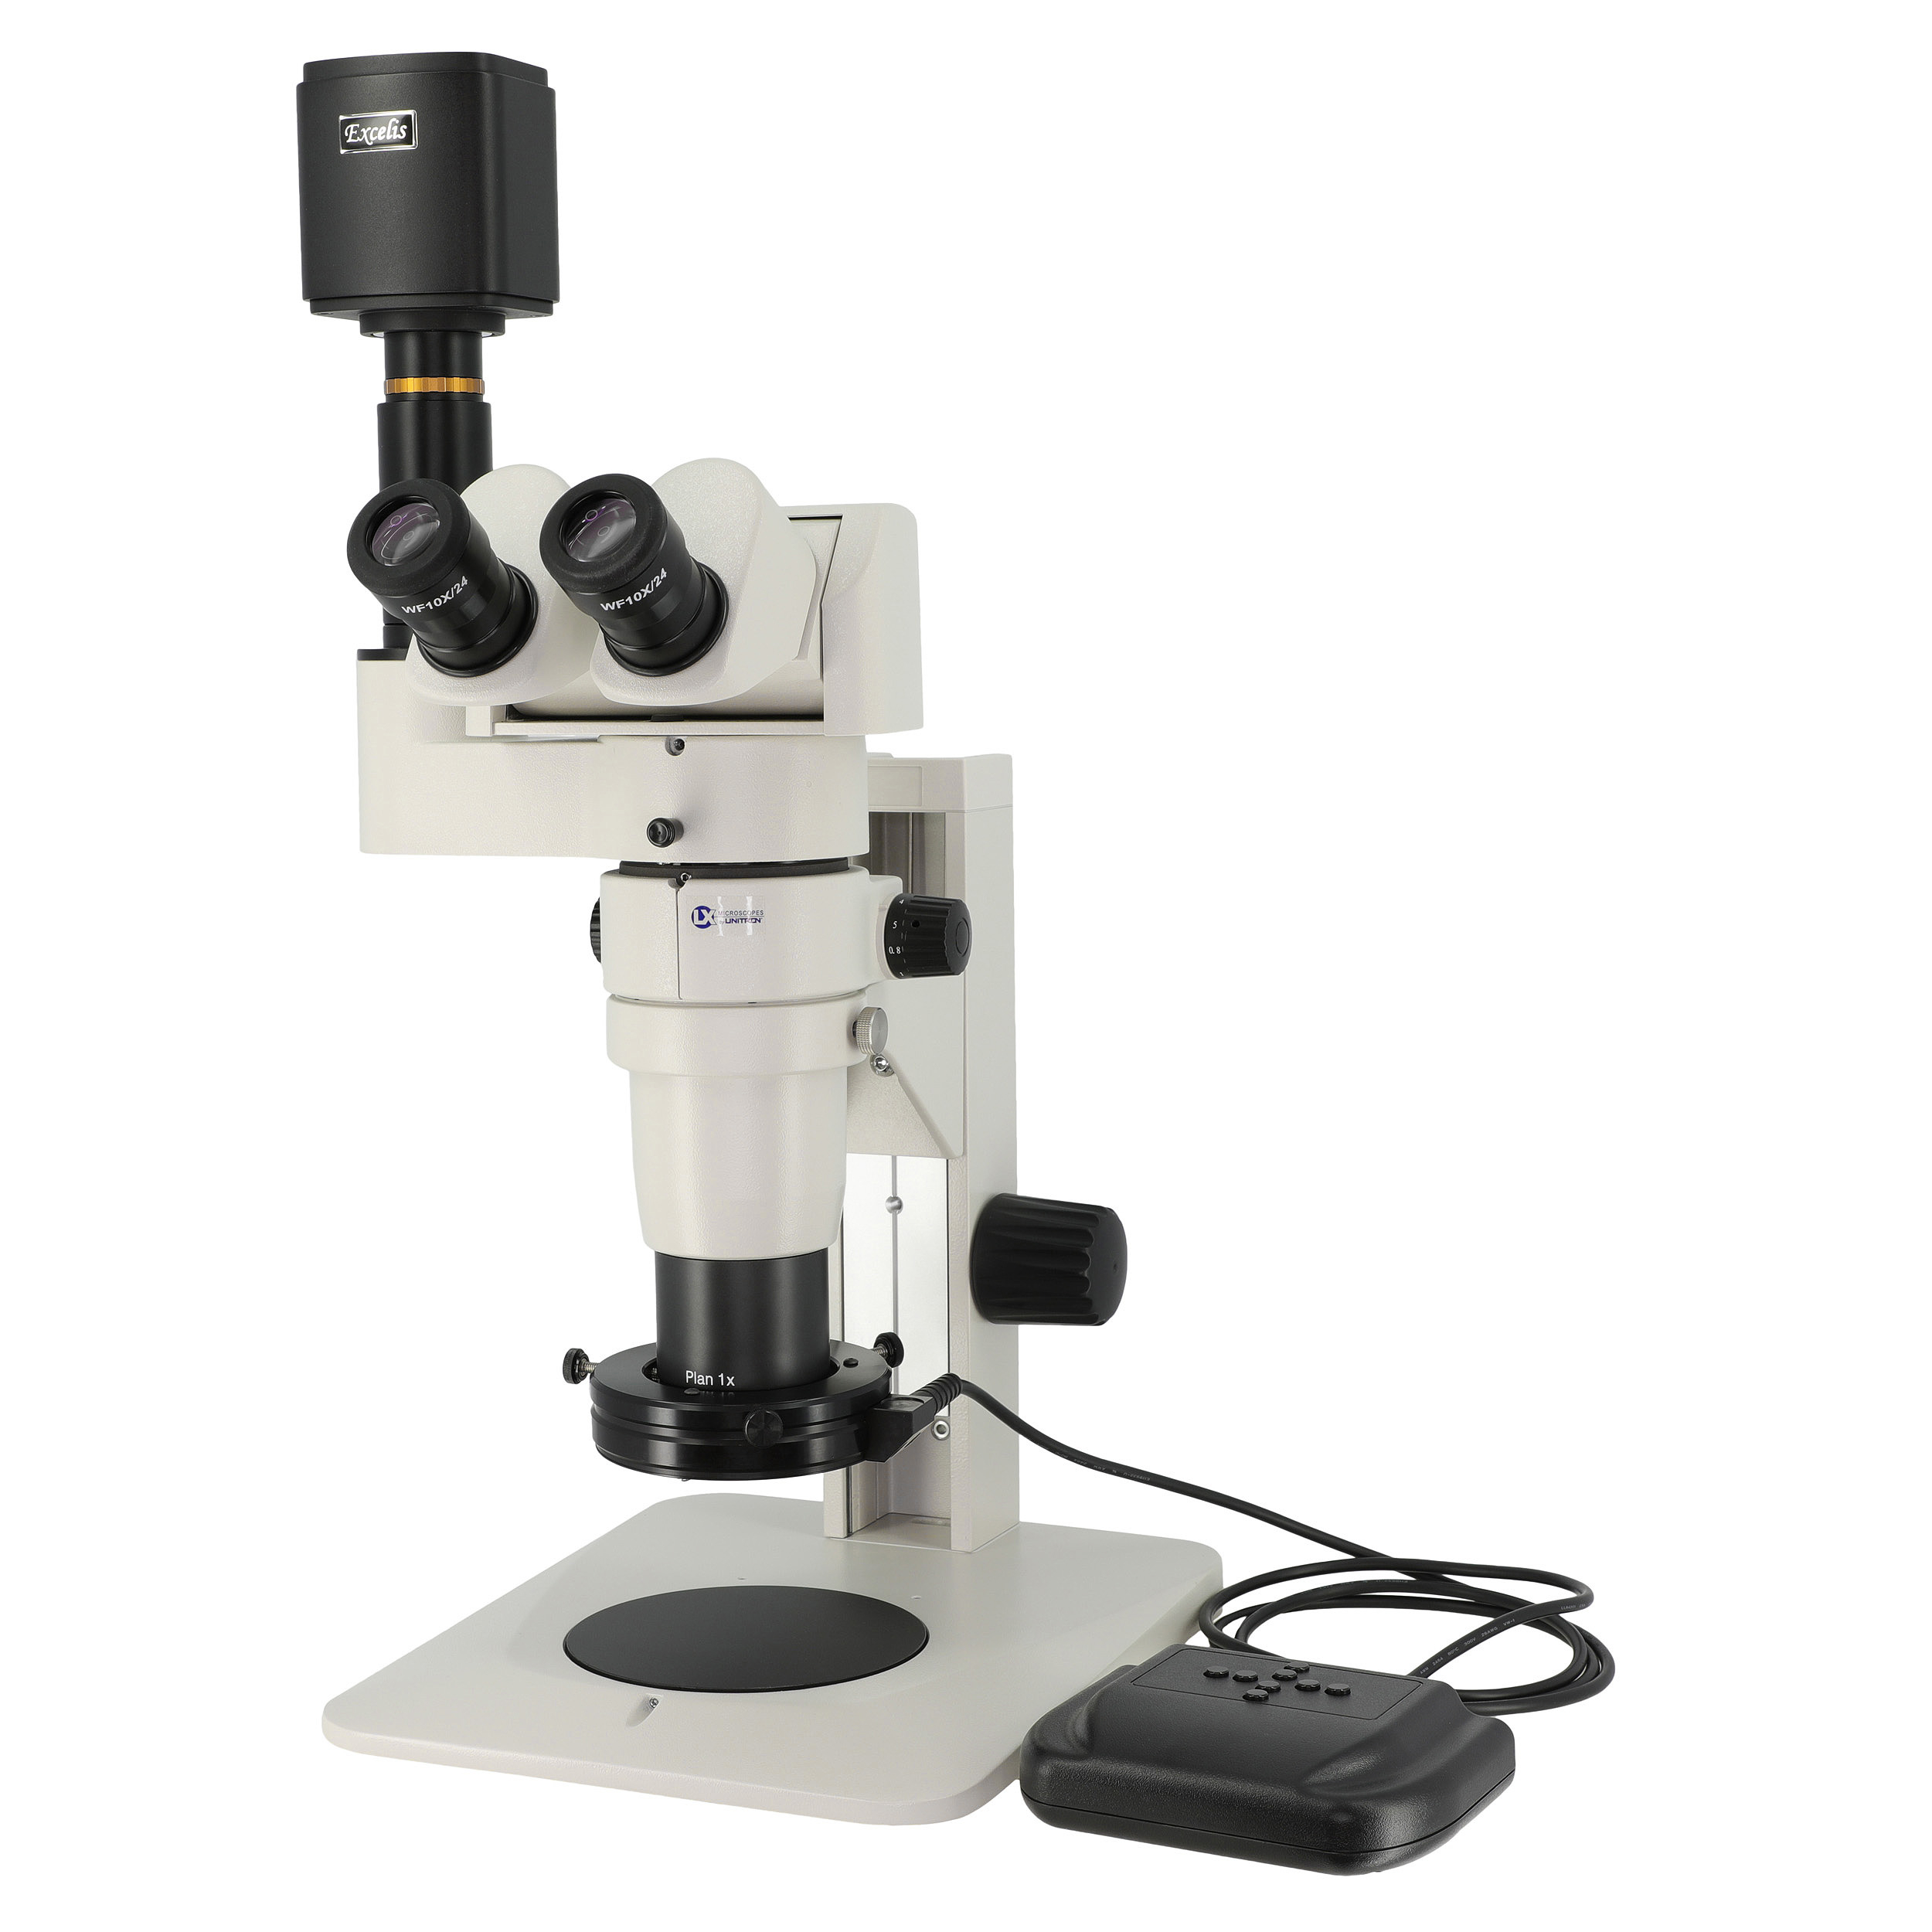 LX Microscopes by UNITRON, System 374, model 24825-HDTRT